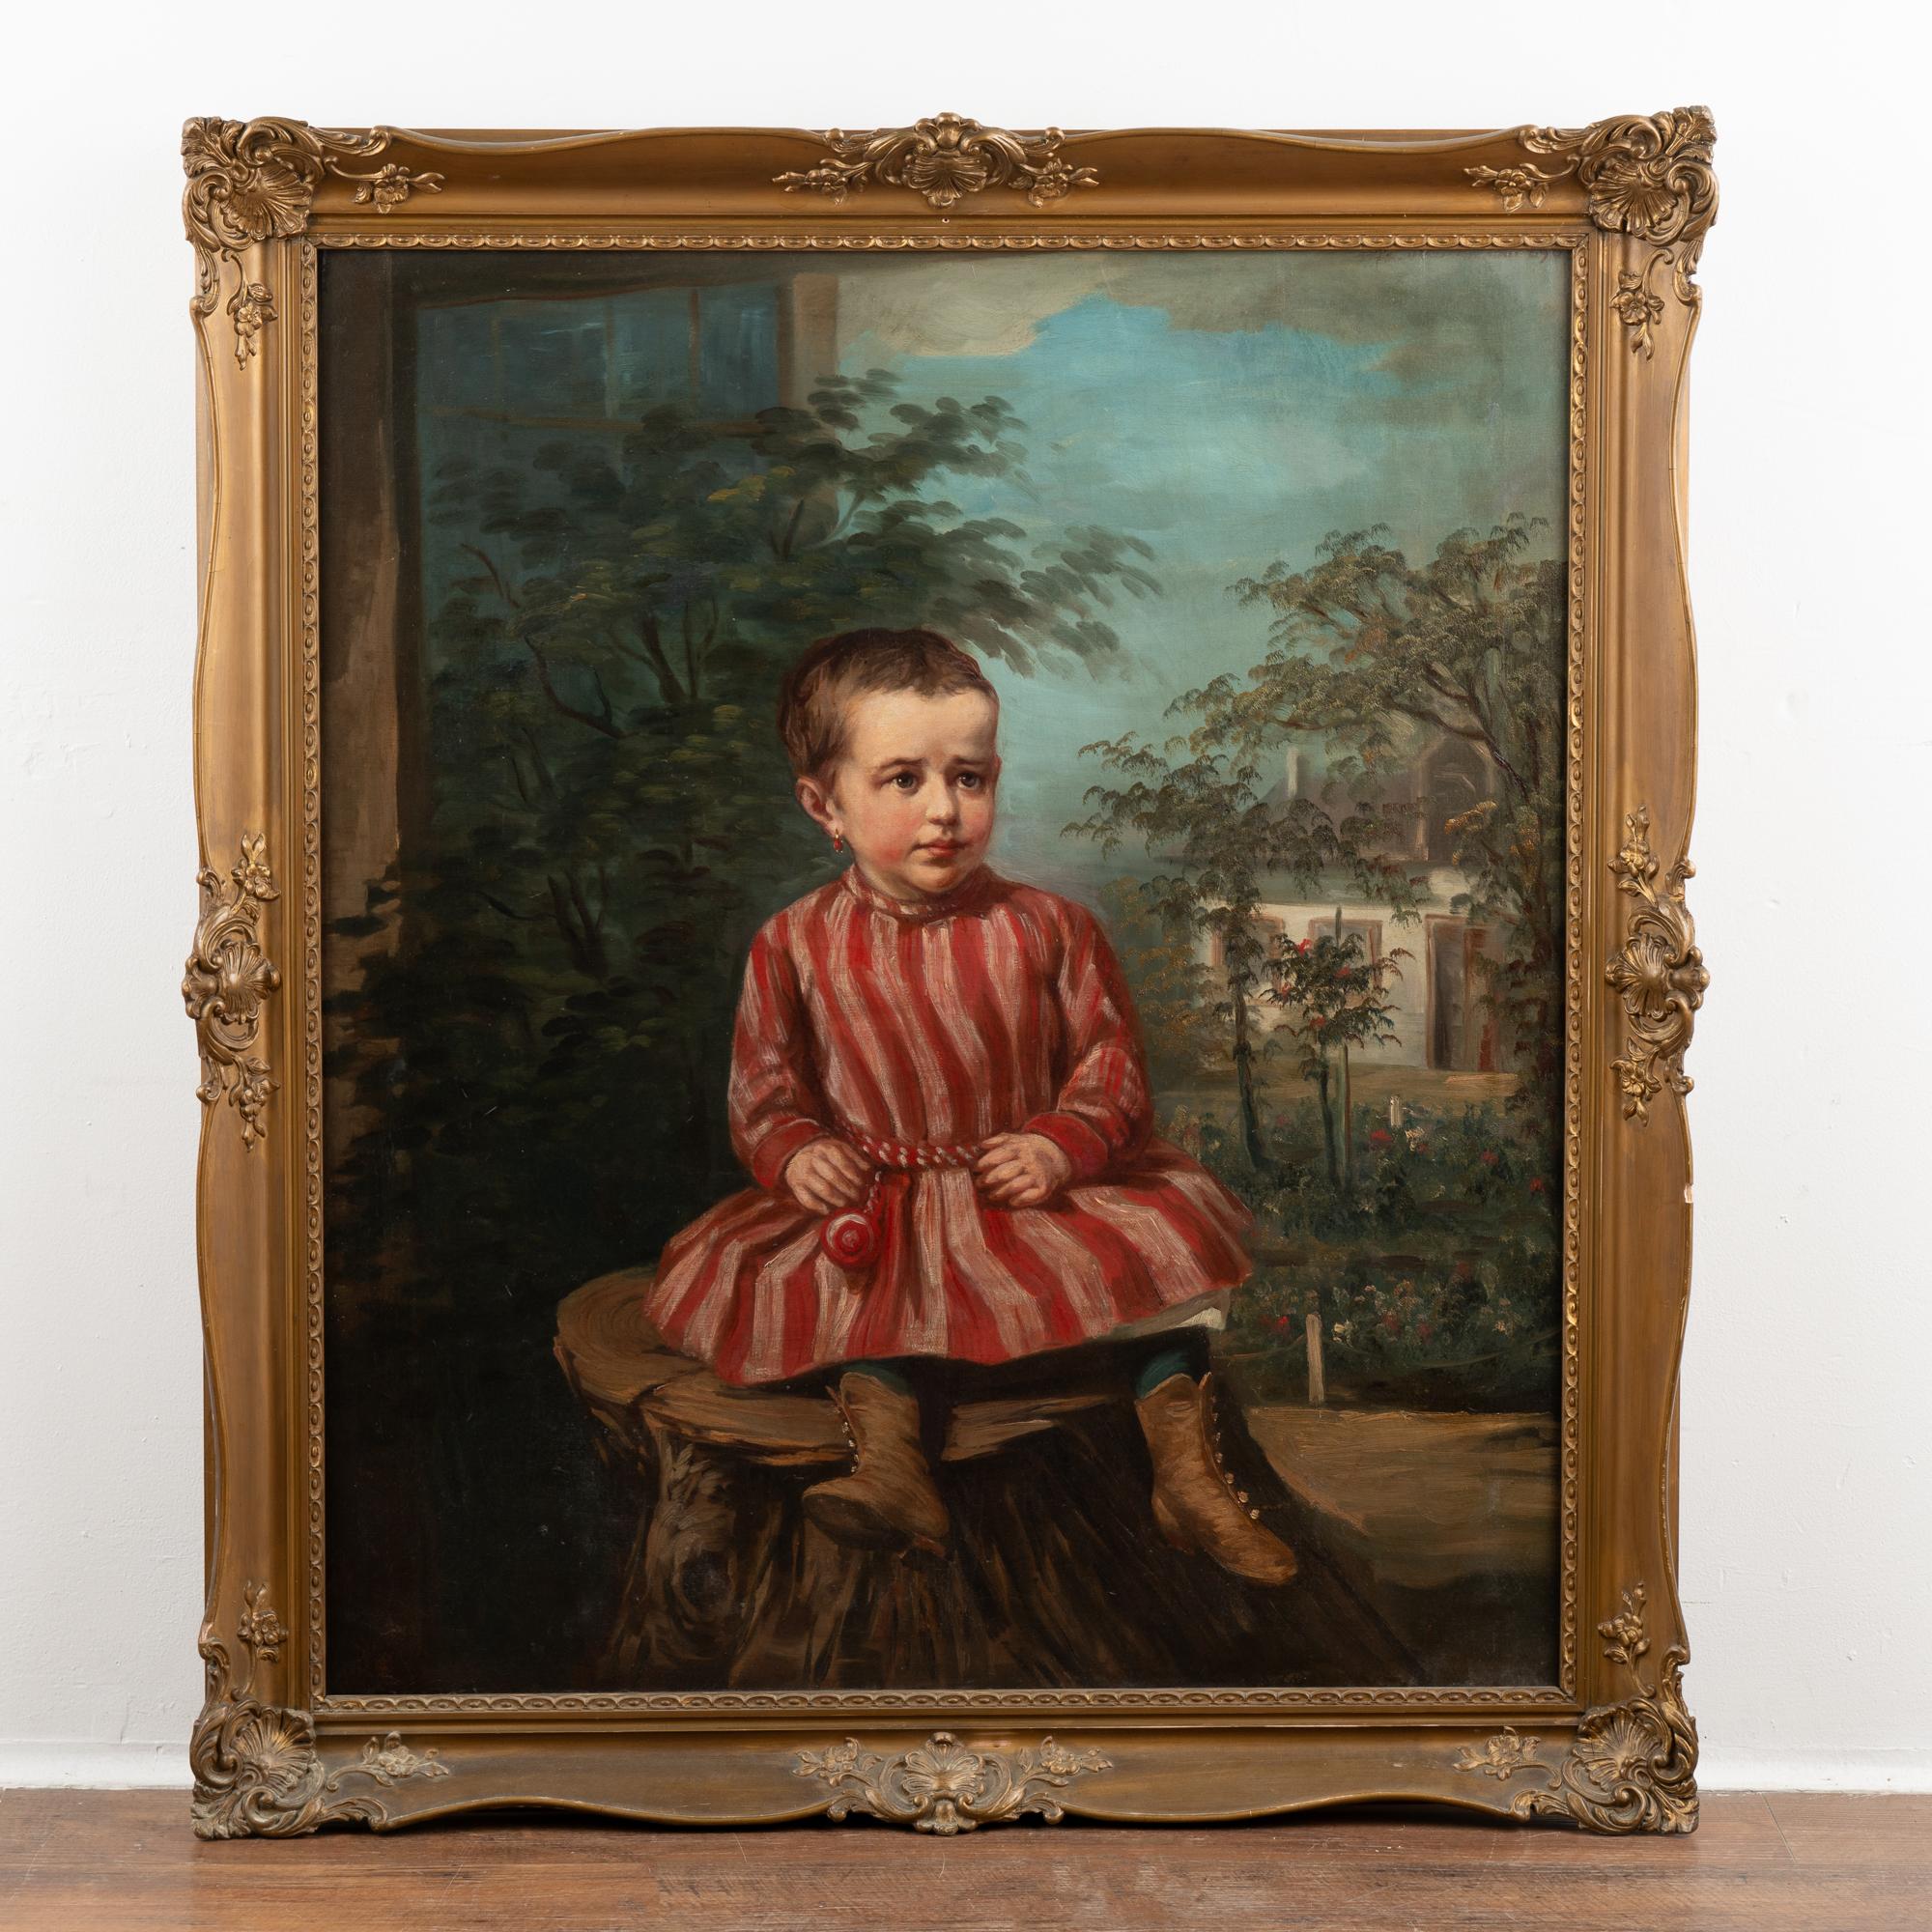 Peinture originale à l'huile sur toile représentant une jeune fille en robe rouge vif assise sur une souche d'arbre.
Signature et date dans le coin supérieur droit, en grande partie recouvertes par le cadre.
Toile en bon état, réparations anciennes